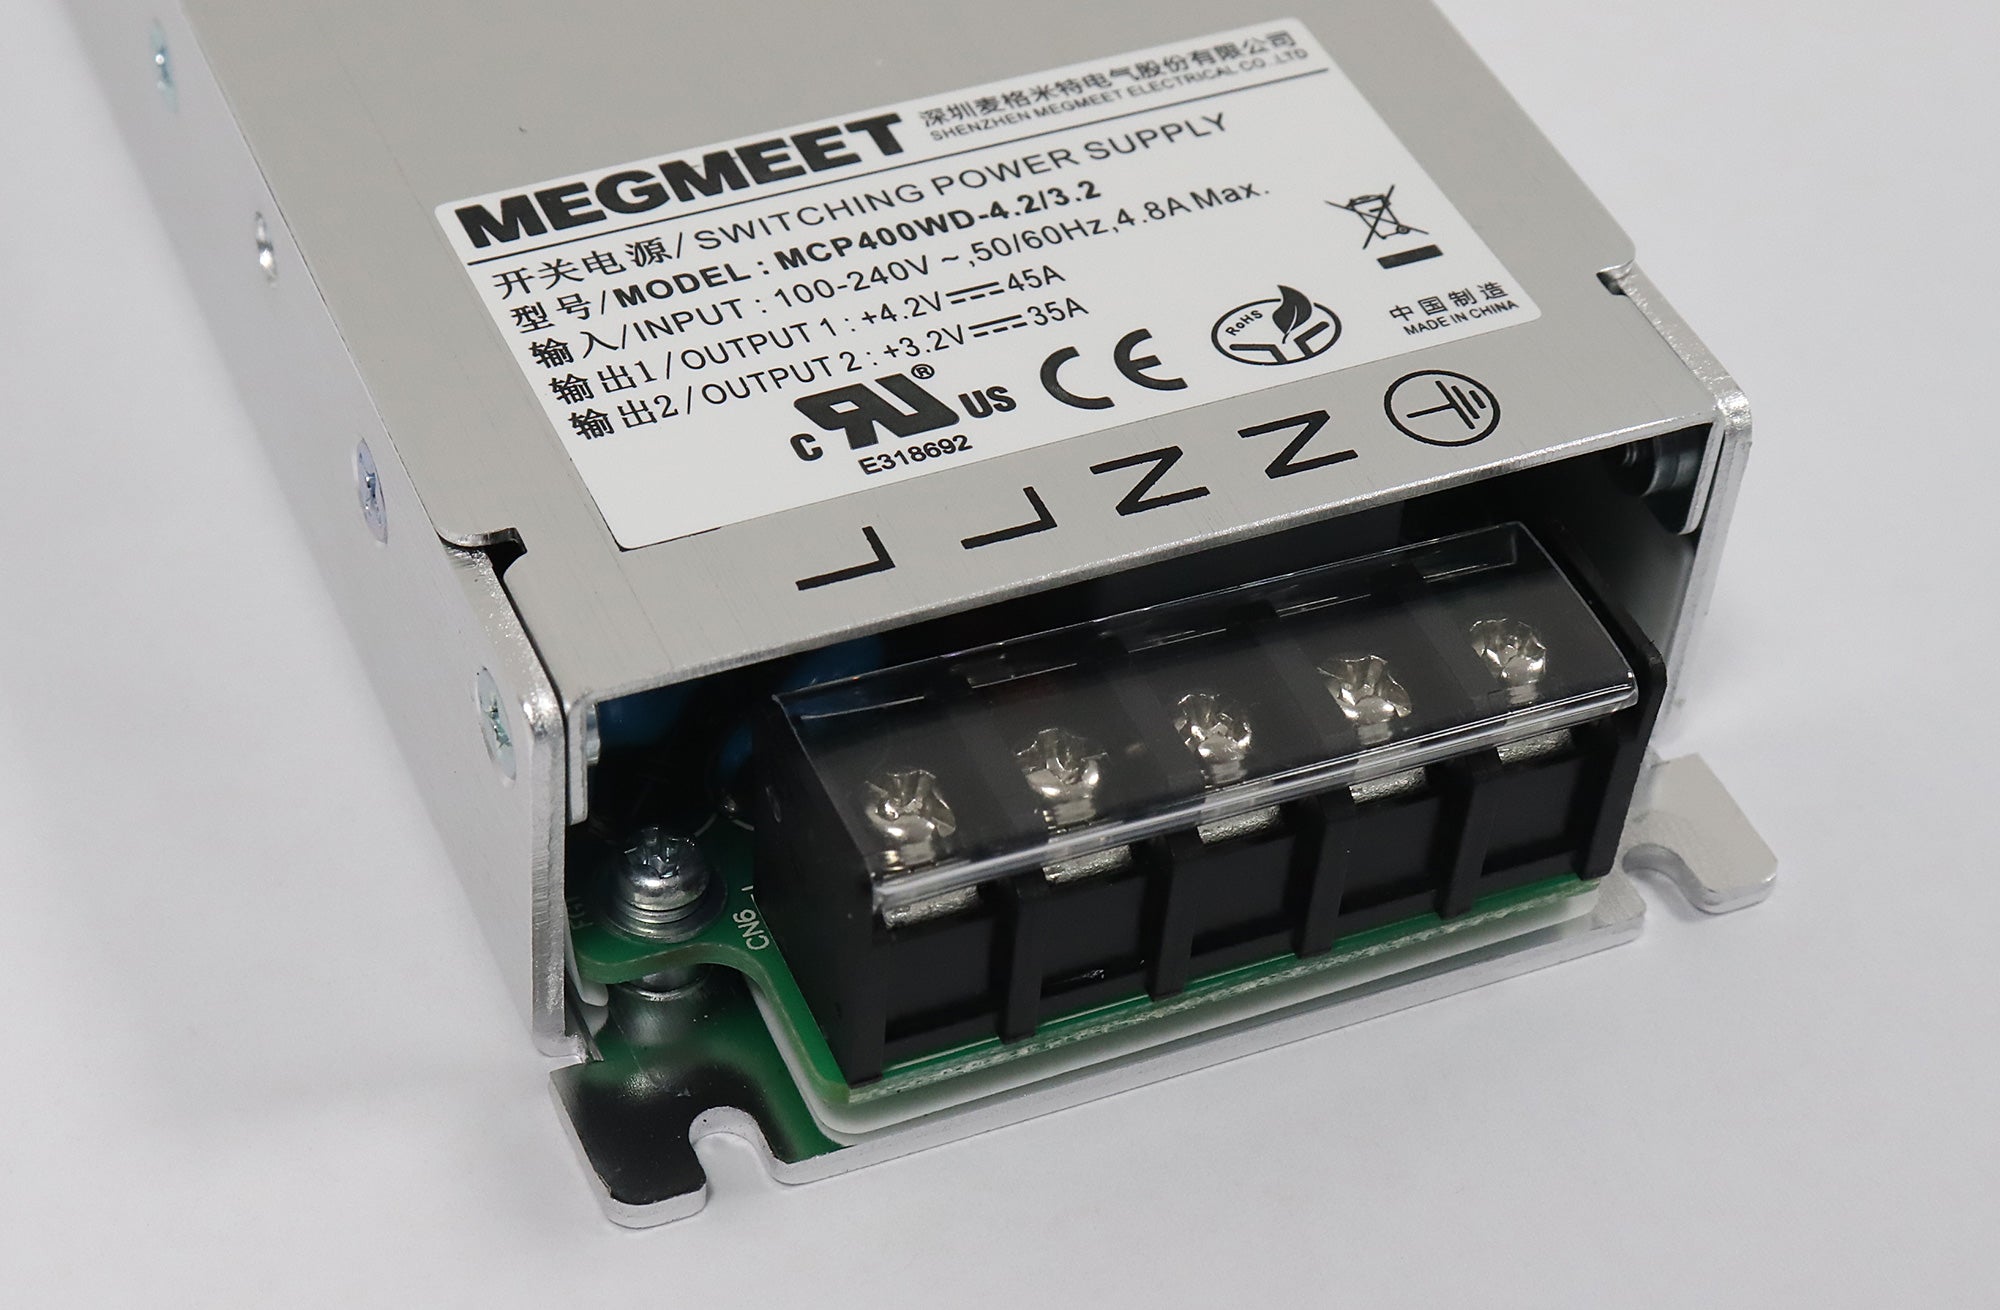 Megmeet MCP400WD-4.2/3.2 Netzteil für LED-Bildschirme